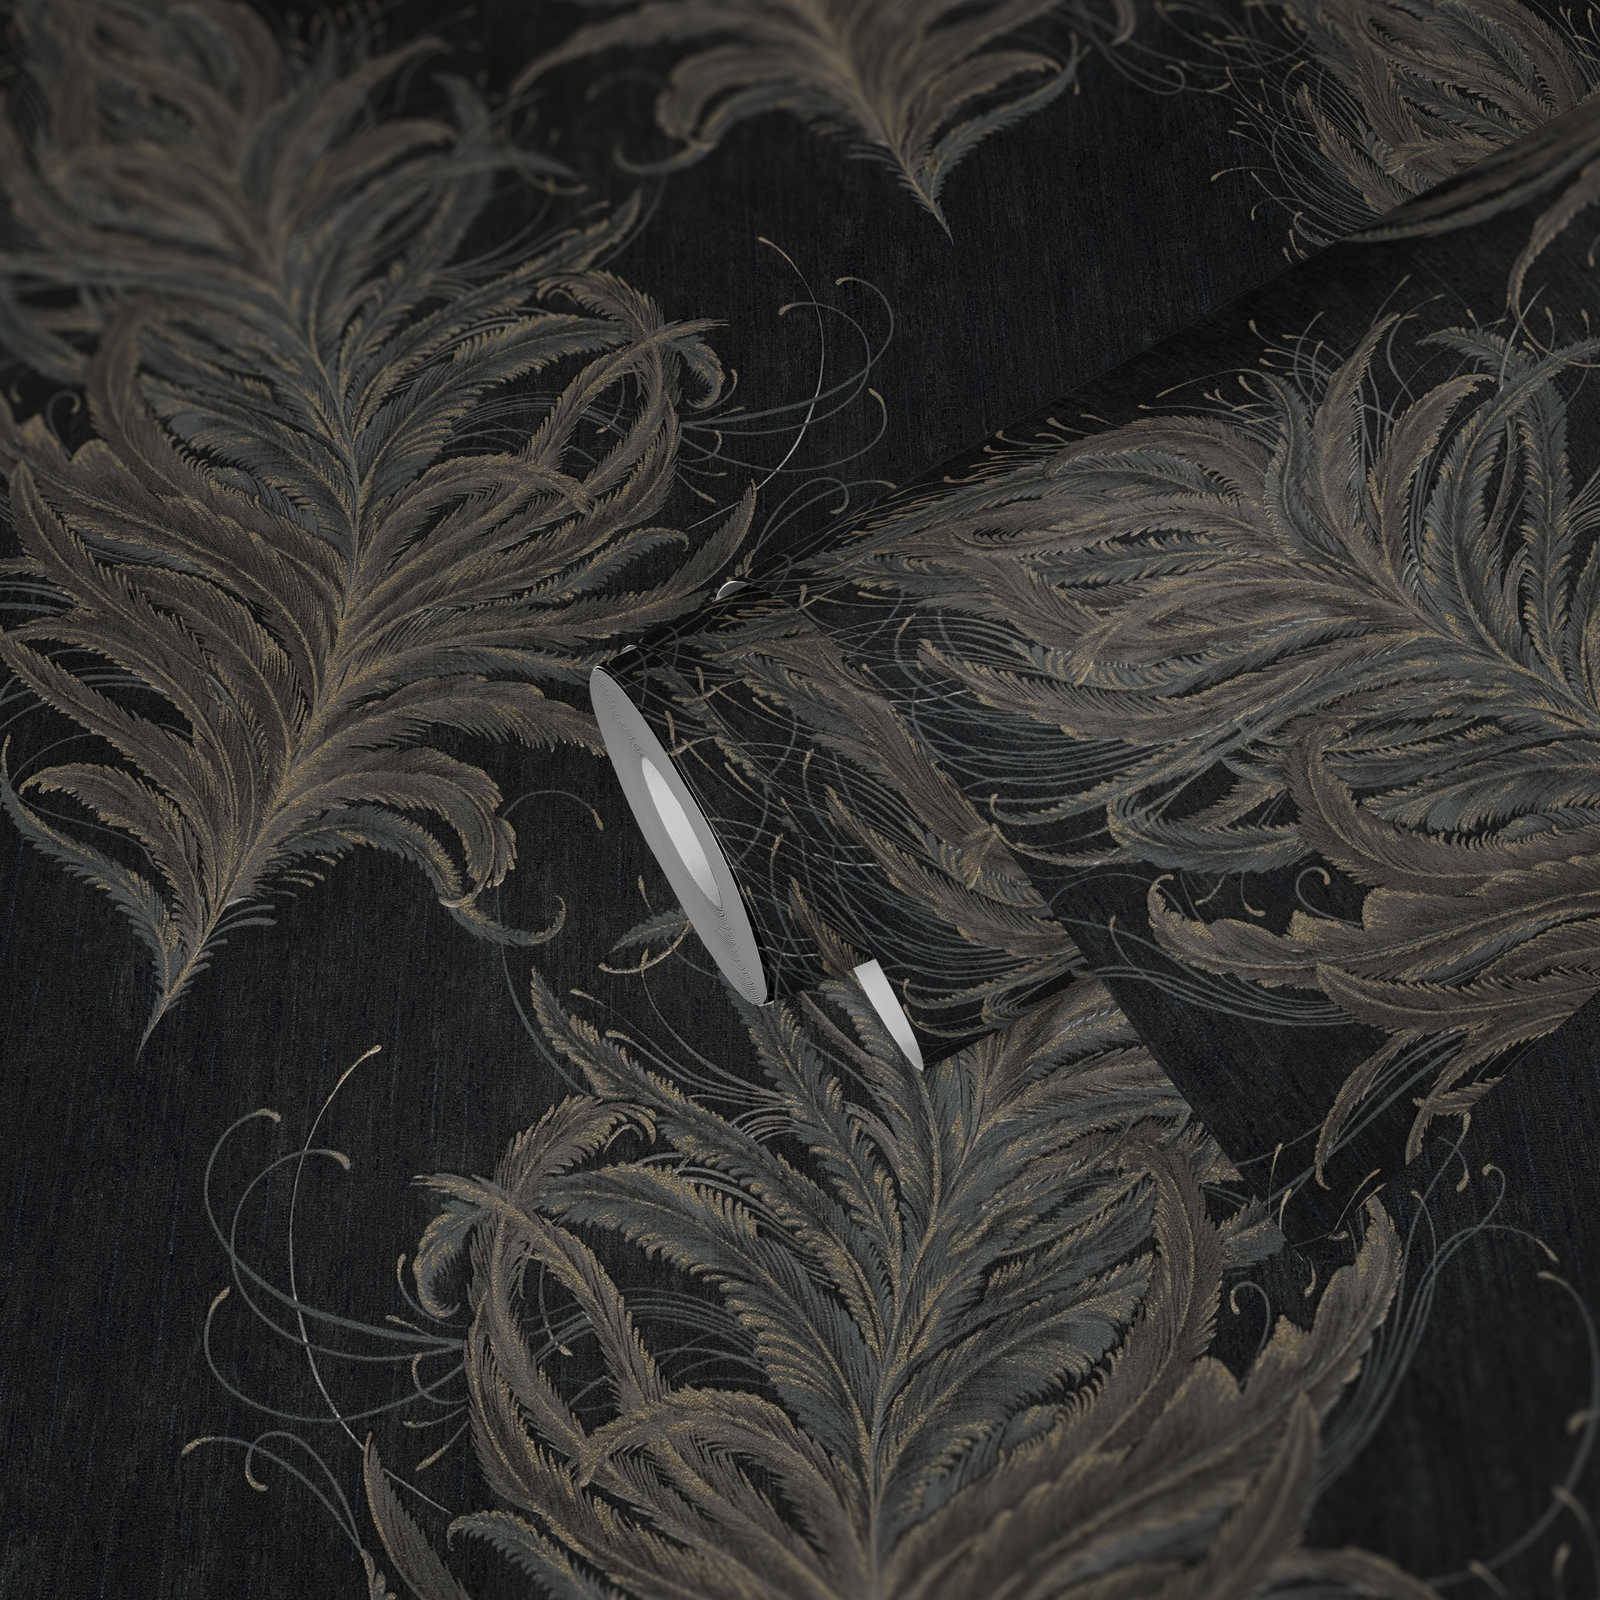             Papel pintado no tejido negro con plumas en colores metálicos
        